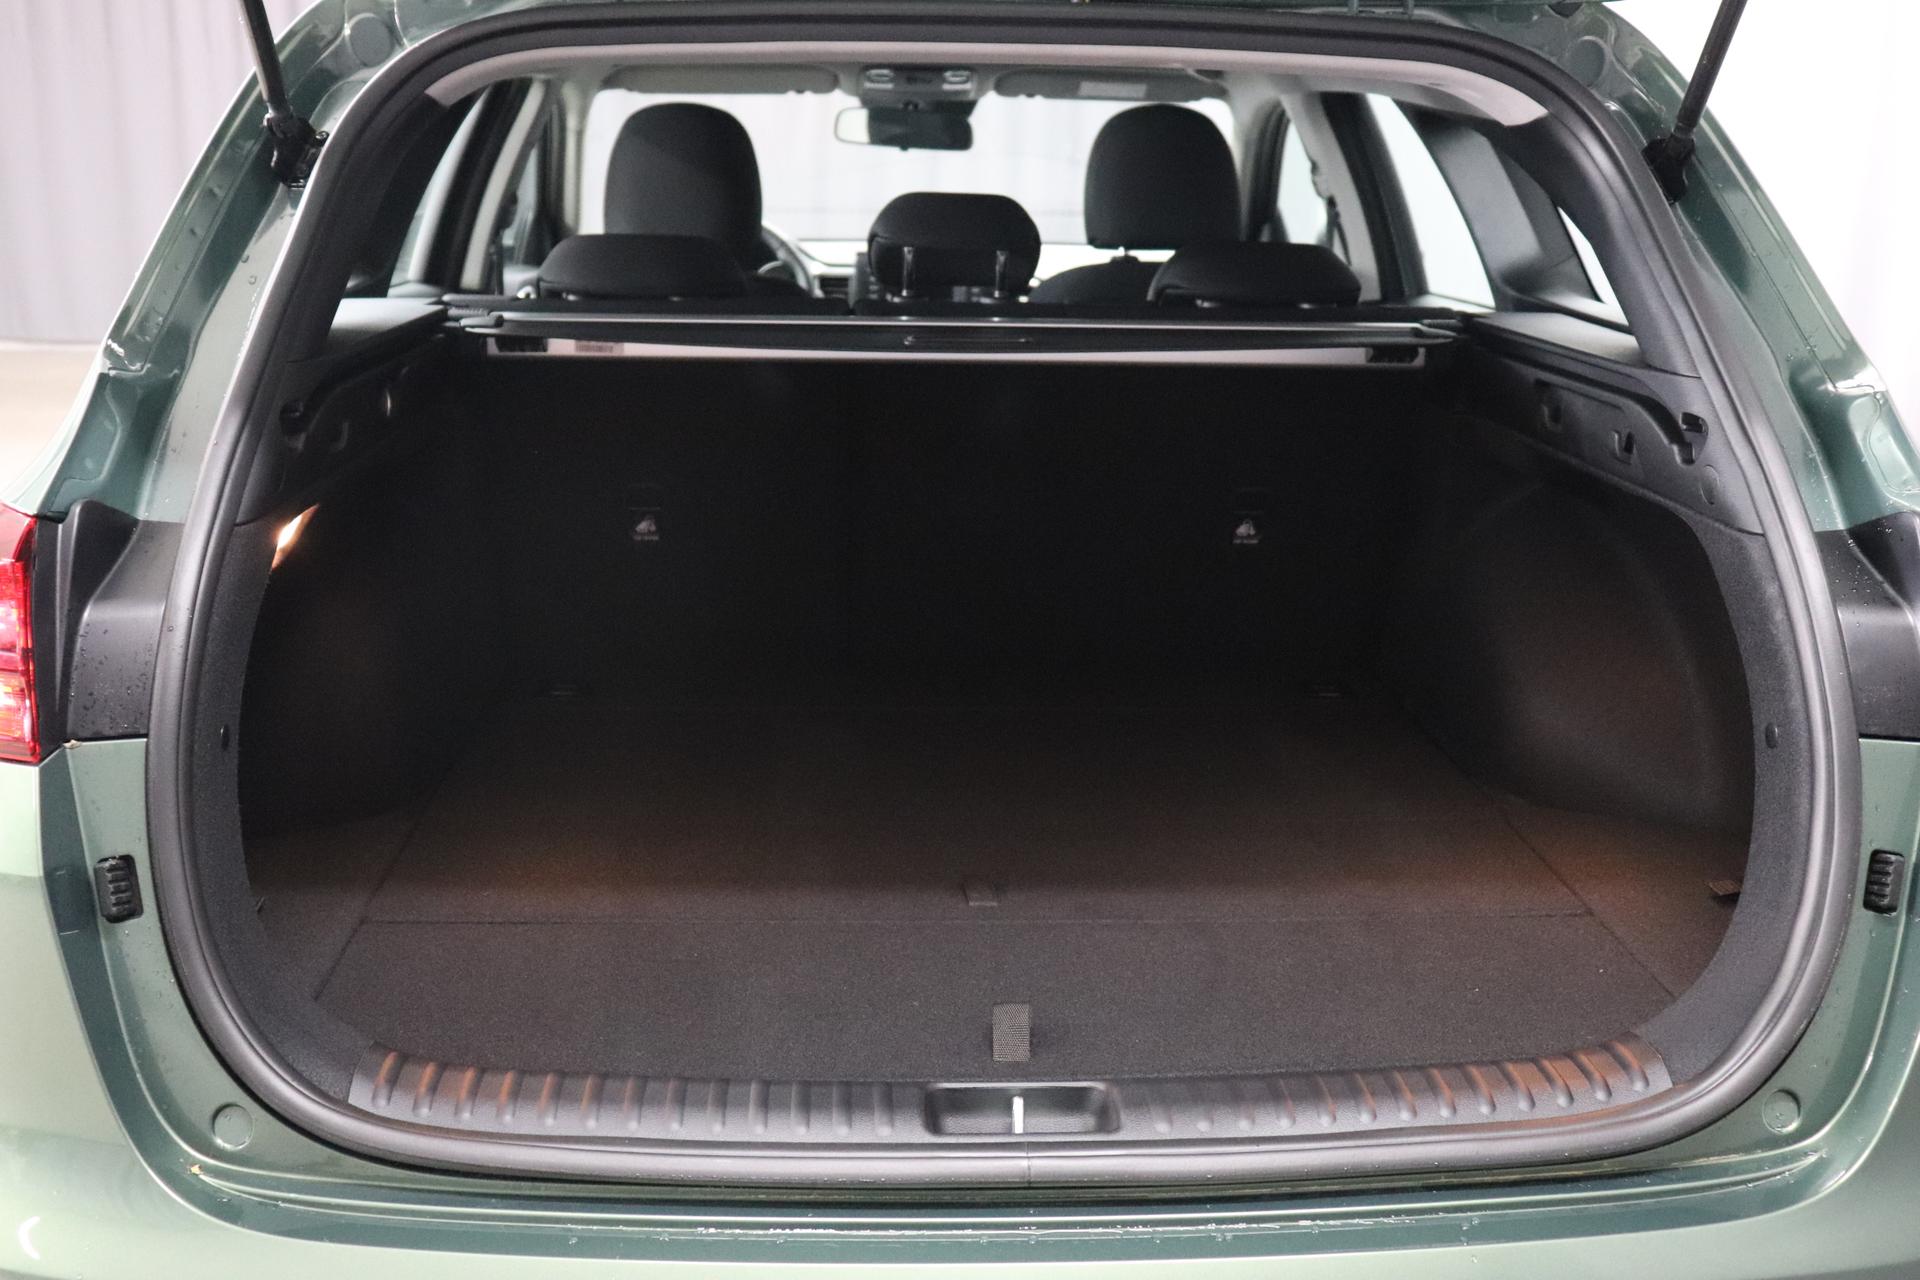 Kia Ceed Sportswagon Silver 1.0 T-GDI 74 kW (101 PS) Klimaanlage, Radio,  DAB, Sitzheizung, Lenkradheizung, Bluetooth, Freisprecheinrichtung,  Lichtsensor, Einparkhilfe hinten, Tempomat, Frontkolisionswarner,  Spurfolgeassistent, uvm. Reimport EU-Neuwagen